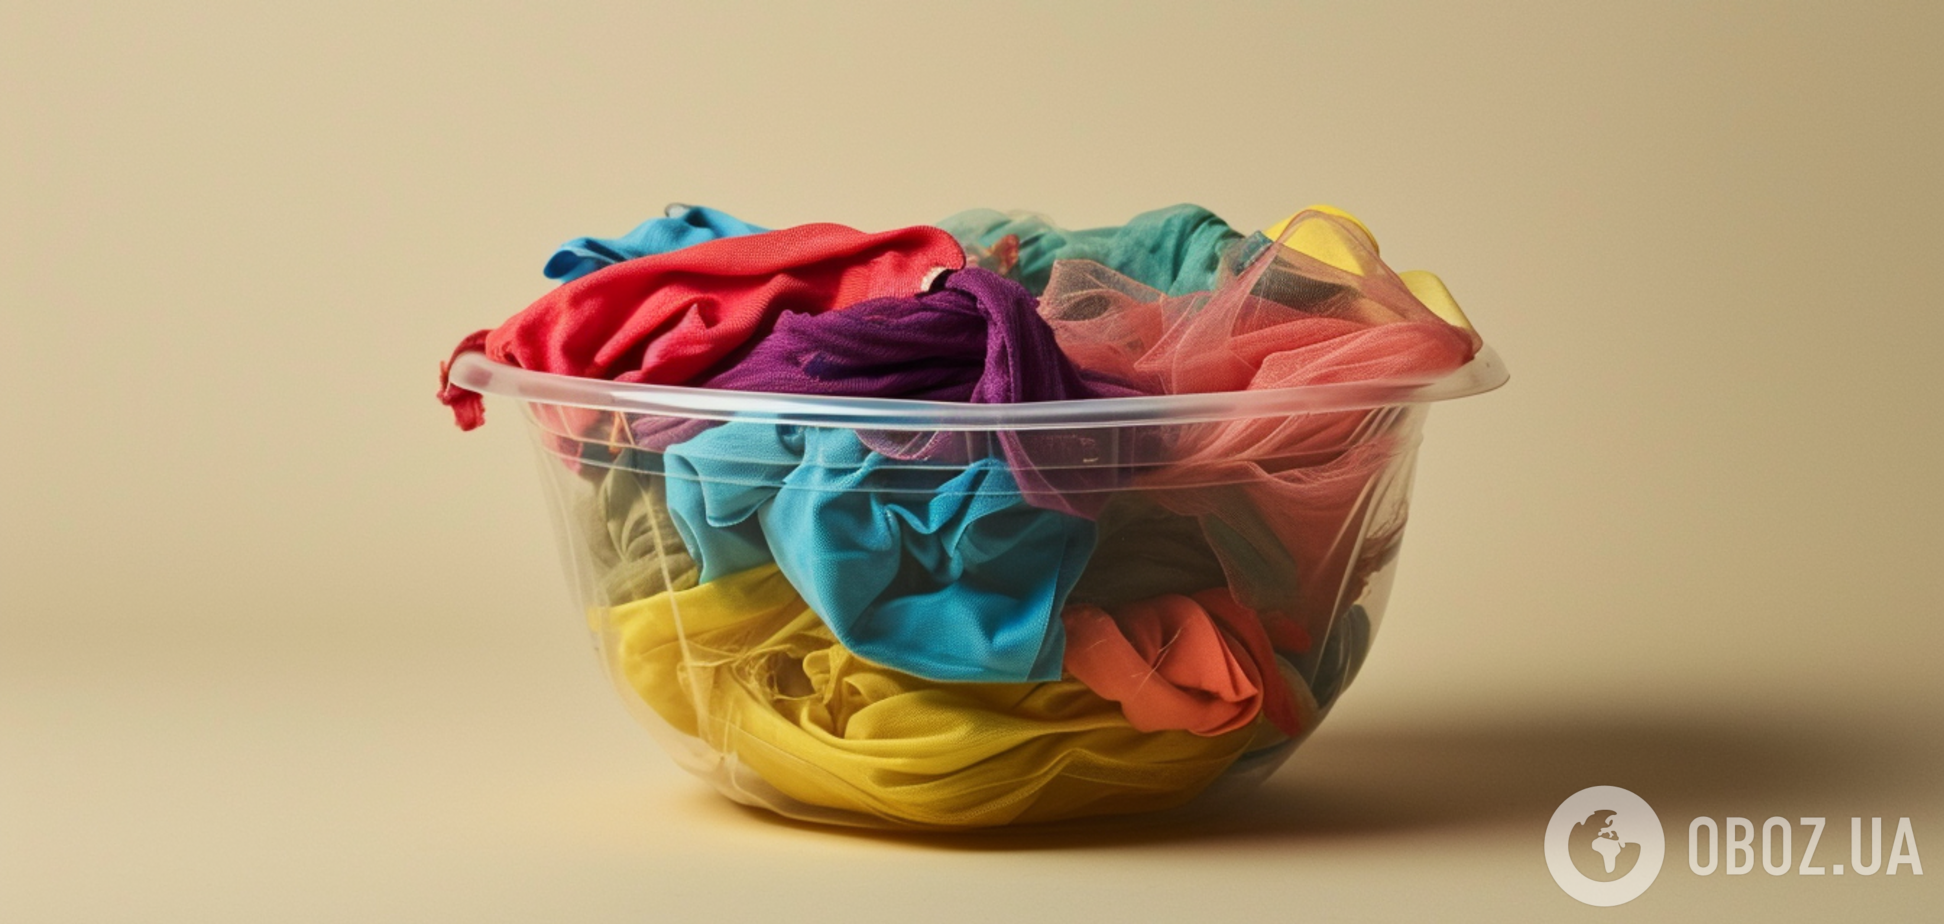 Як правильно сортувати одяг за кольорами при пранні: знають далеко не всі